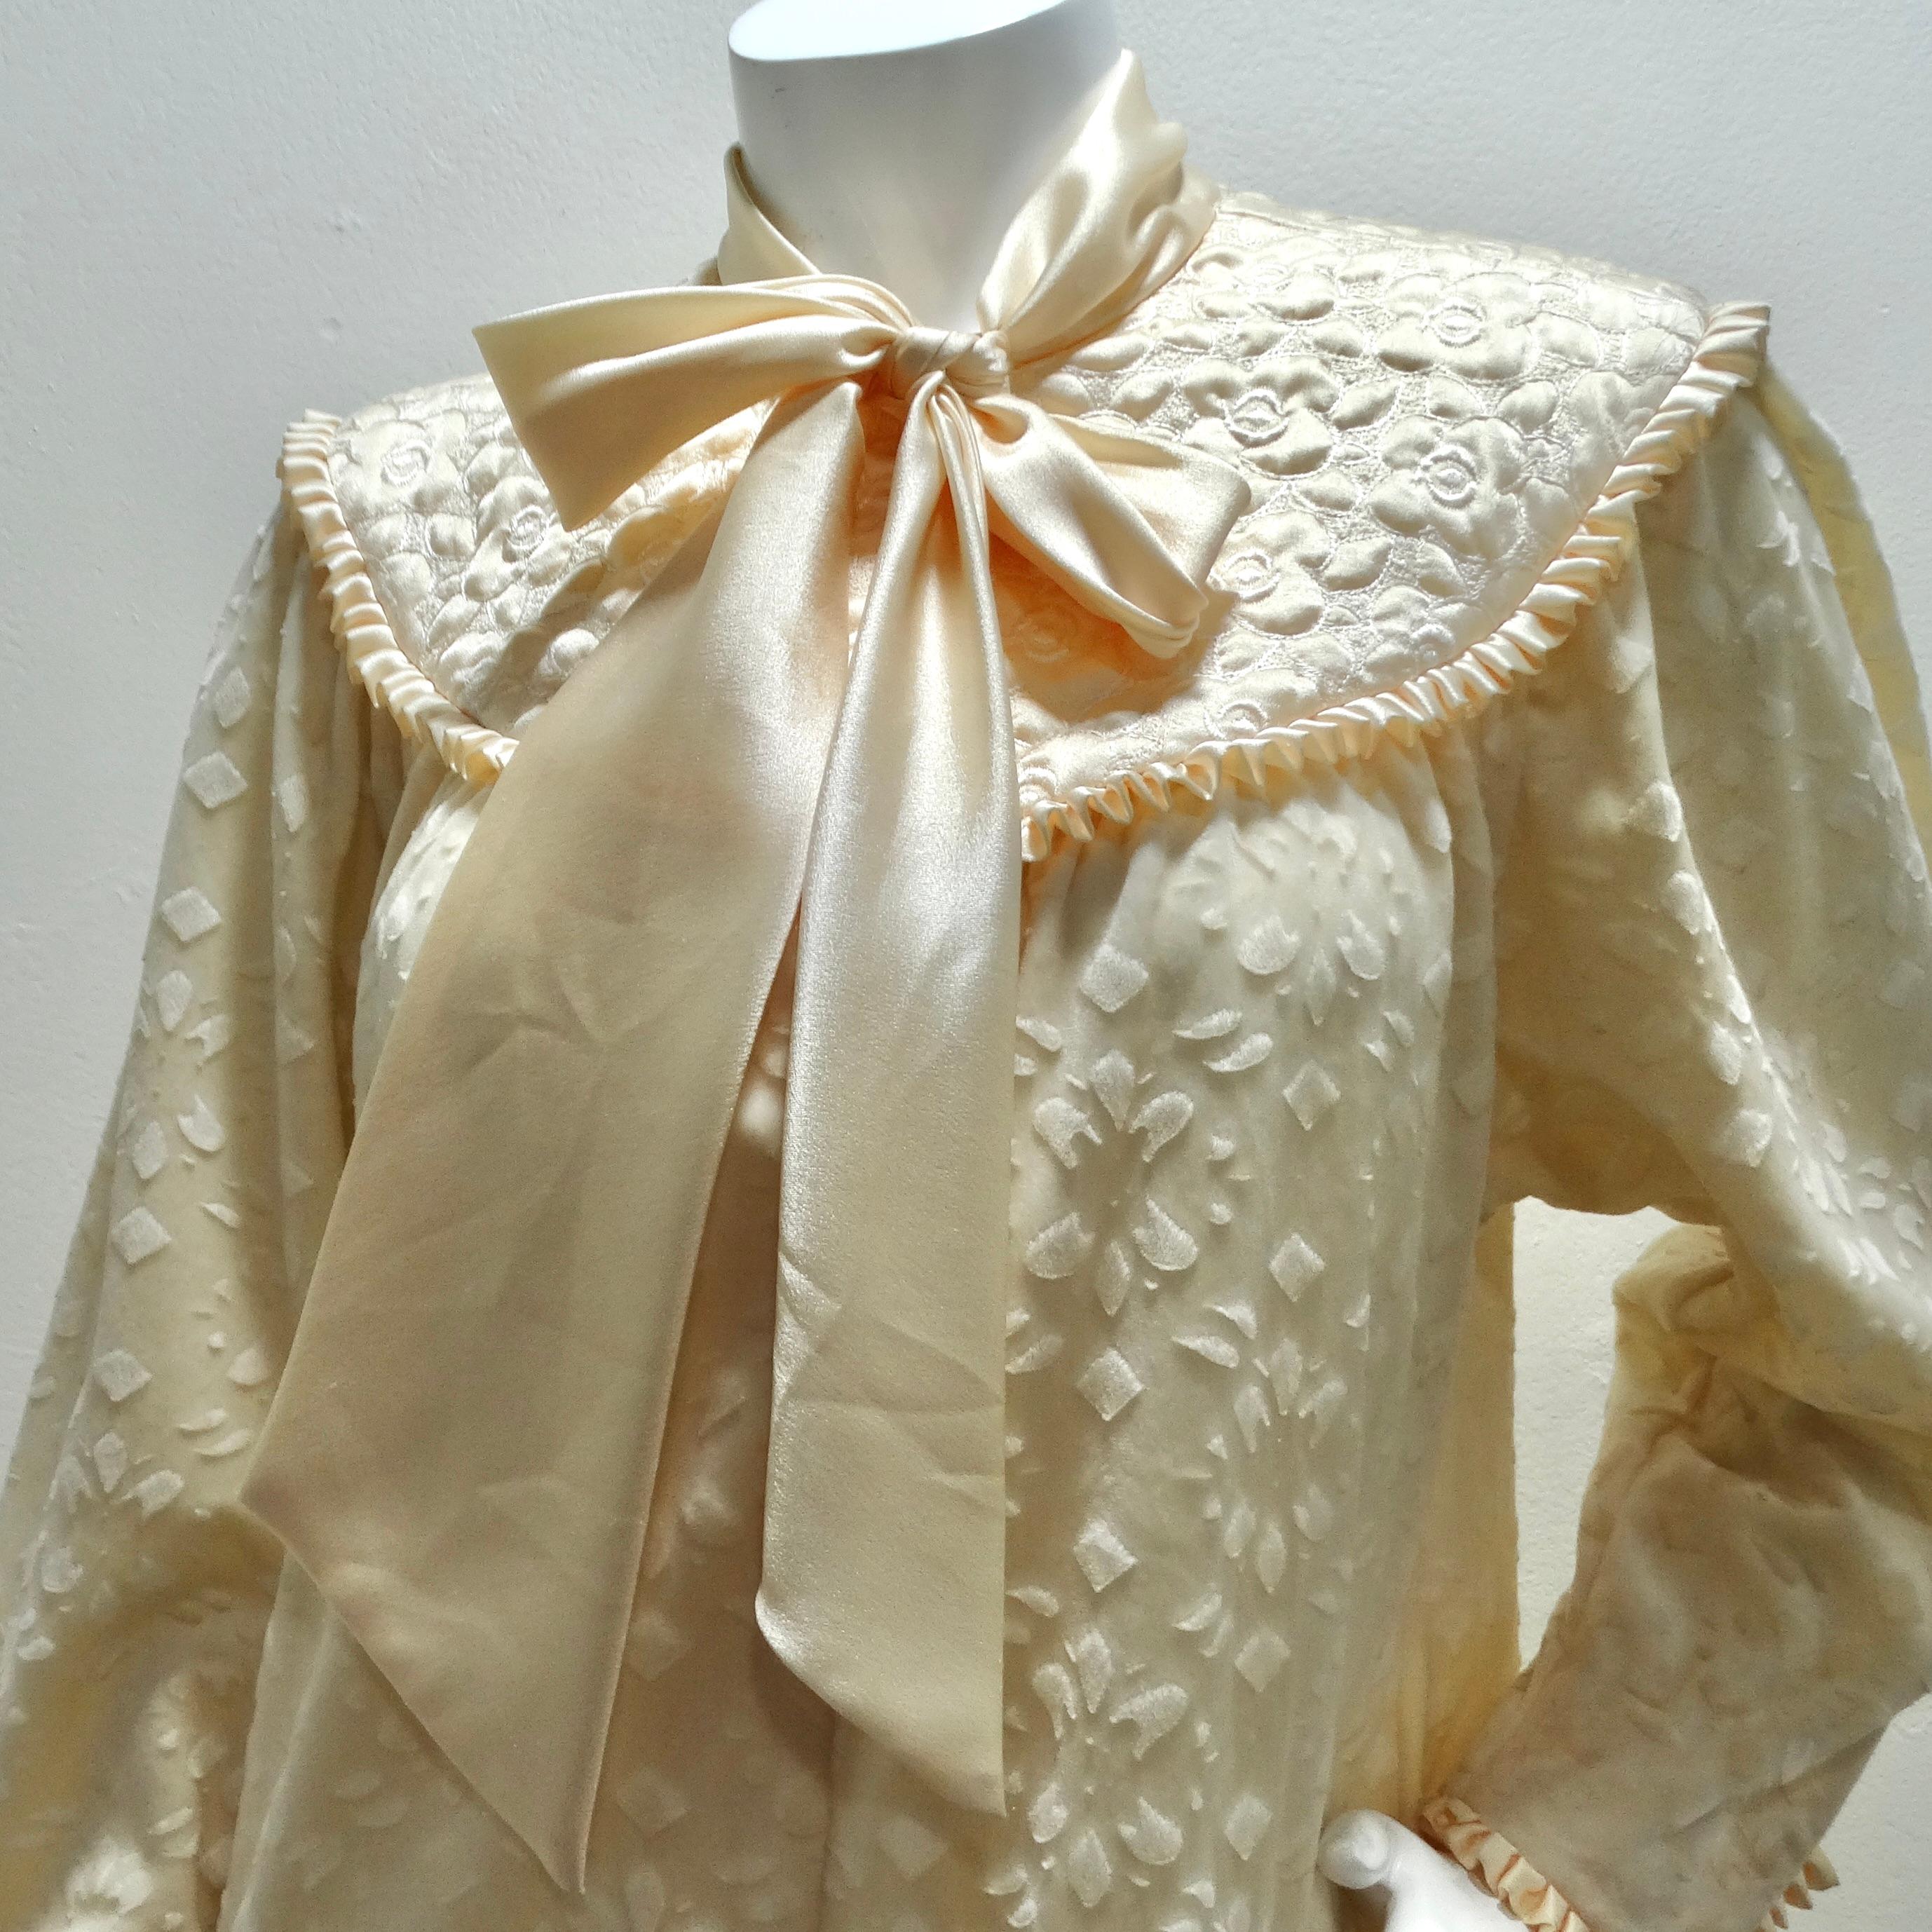 Das elfenbeinfarbene Maxikleid aus Samt von Christian Dior aus den 1960er Jahren ist ein exquisites und zeitloses Stück, das jeder Garderobe einen Hauch von Luxus und Eleganz verleiht.

Der elfenbeinfarbene Off-White-Ton des Kleides strahlt Eleganz